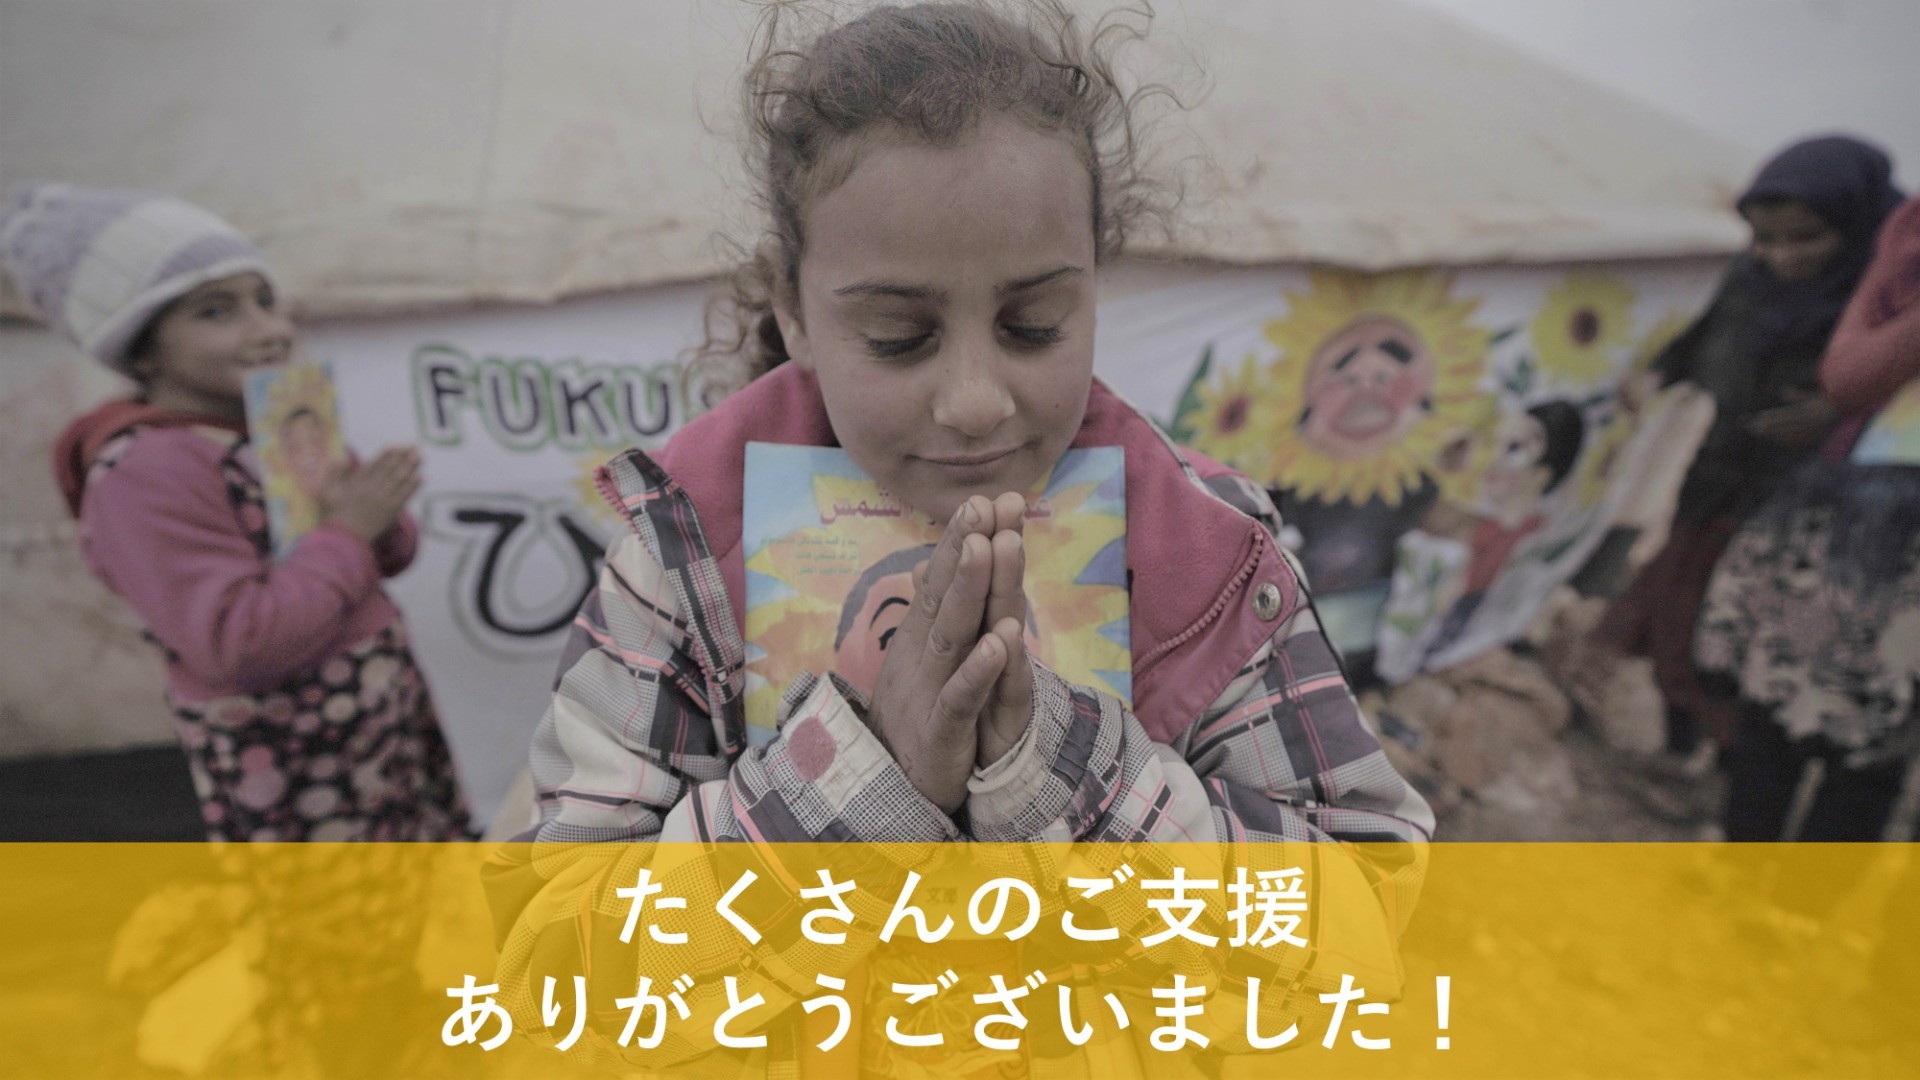 クラウドファンディング終了のお知らせ「福島からシリアの子どもたちへ贈る”希望の絵本”」